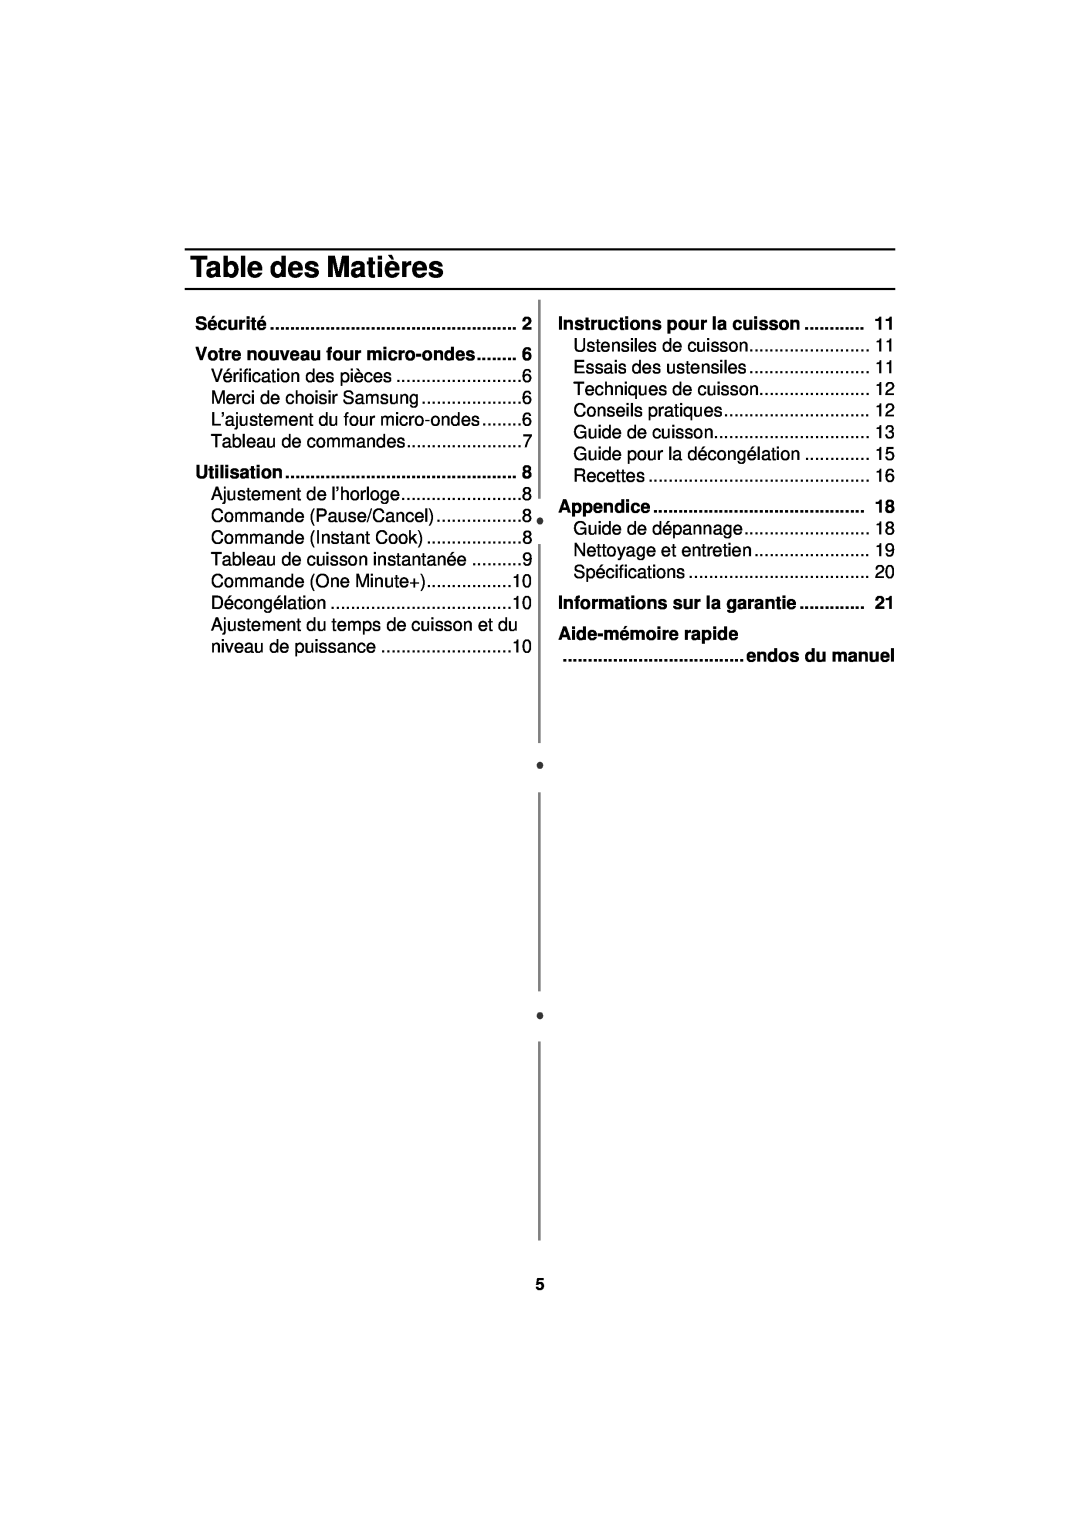 Samsung MW830BA manual Table des Matières, Instructions pour la cuisson, Aide-mémoire rapide 